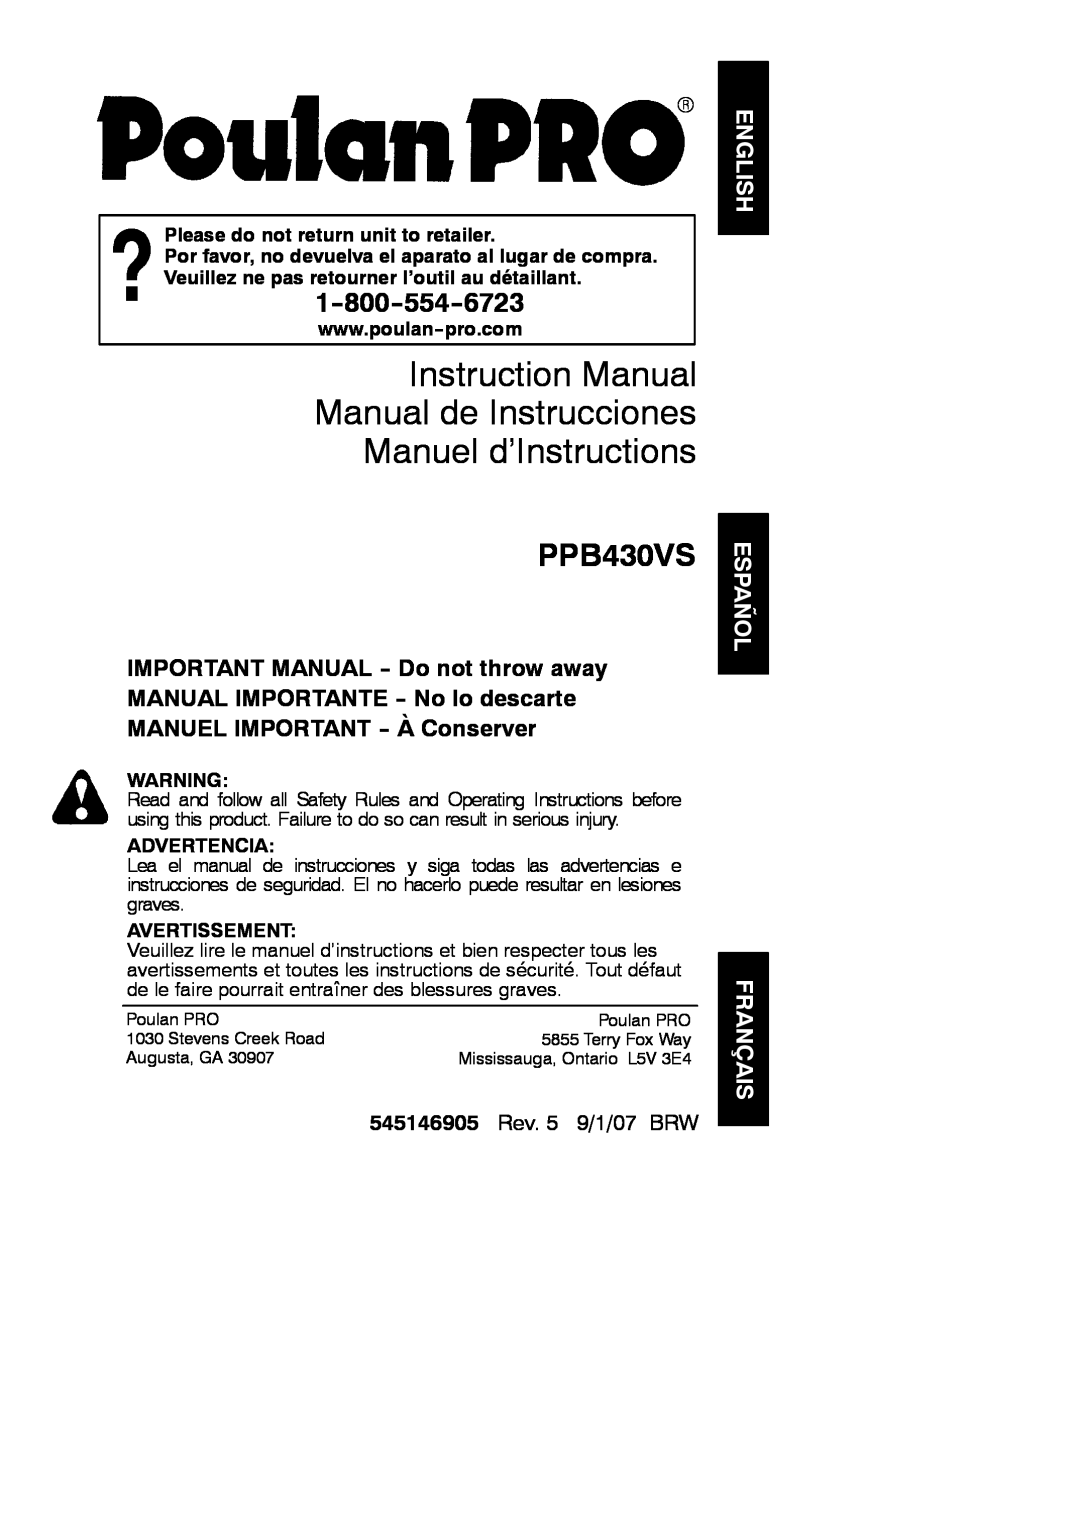 Poulan 545146905 instruction manual Instruction Manual Manual de Instrucciones Manuel d’Instructions, PPB430VS 